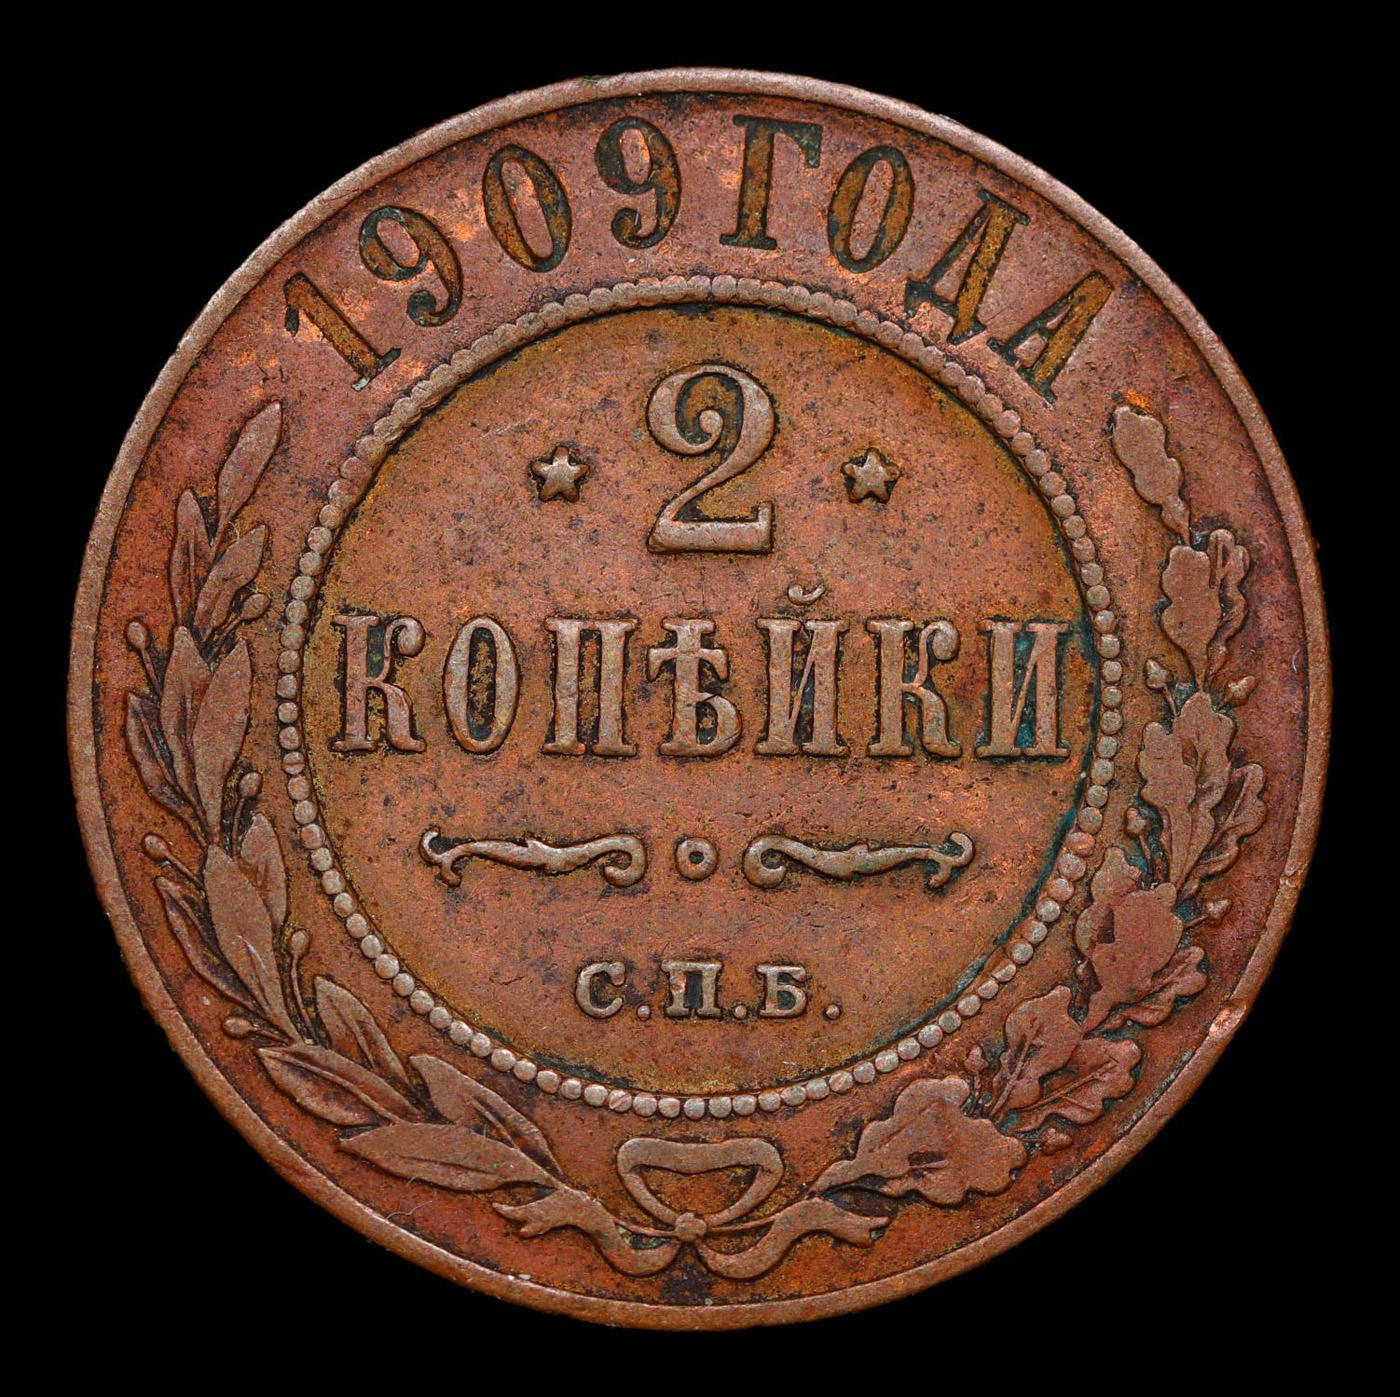 1909 Russia 2 Kopeks Y# 10.2 Grades AU, Almost Unc